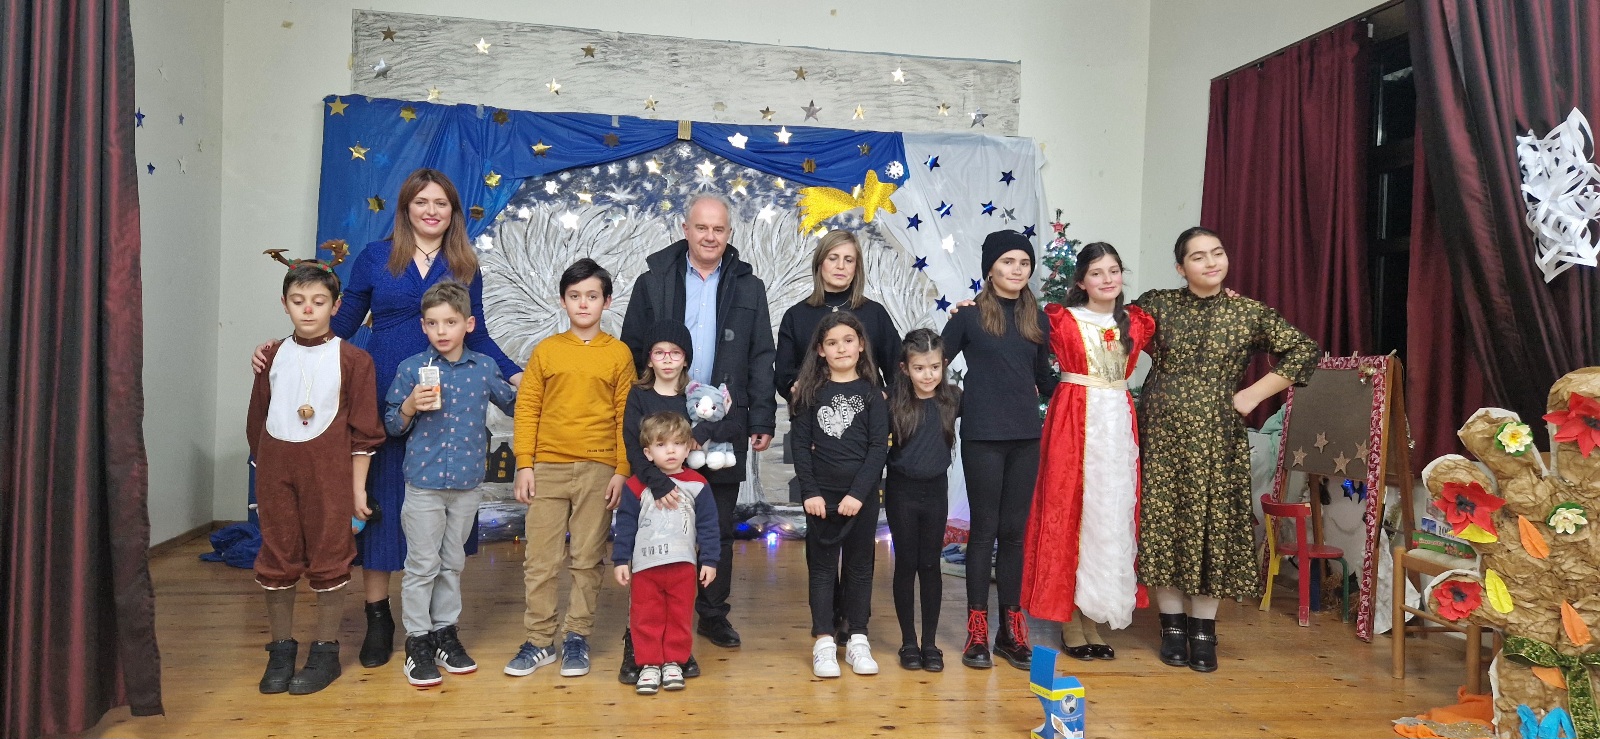 Στην Χριστουγεννιάτικη γιορτή στο δημοτικό σχολείο των Αμπελακίων ο Δήμαρχος Γ. Μανώλης